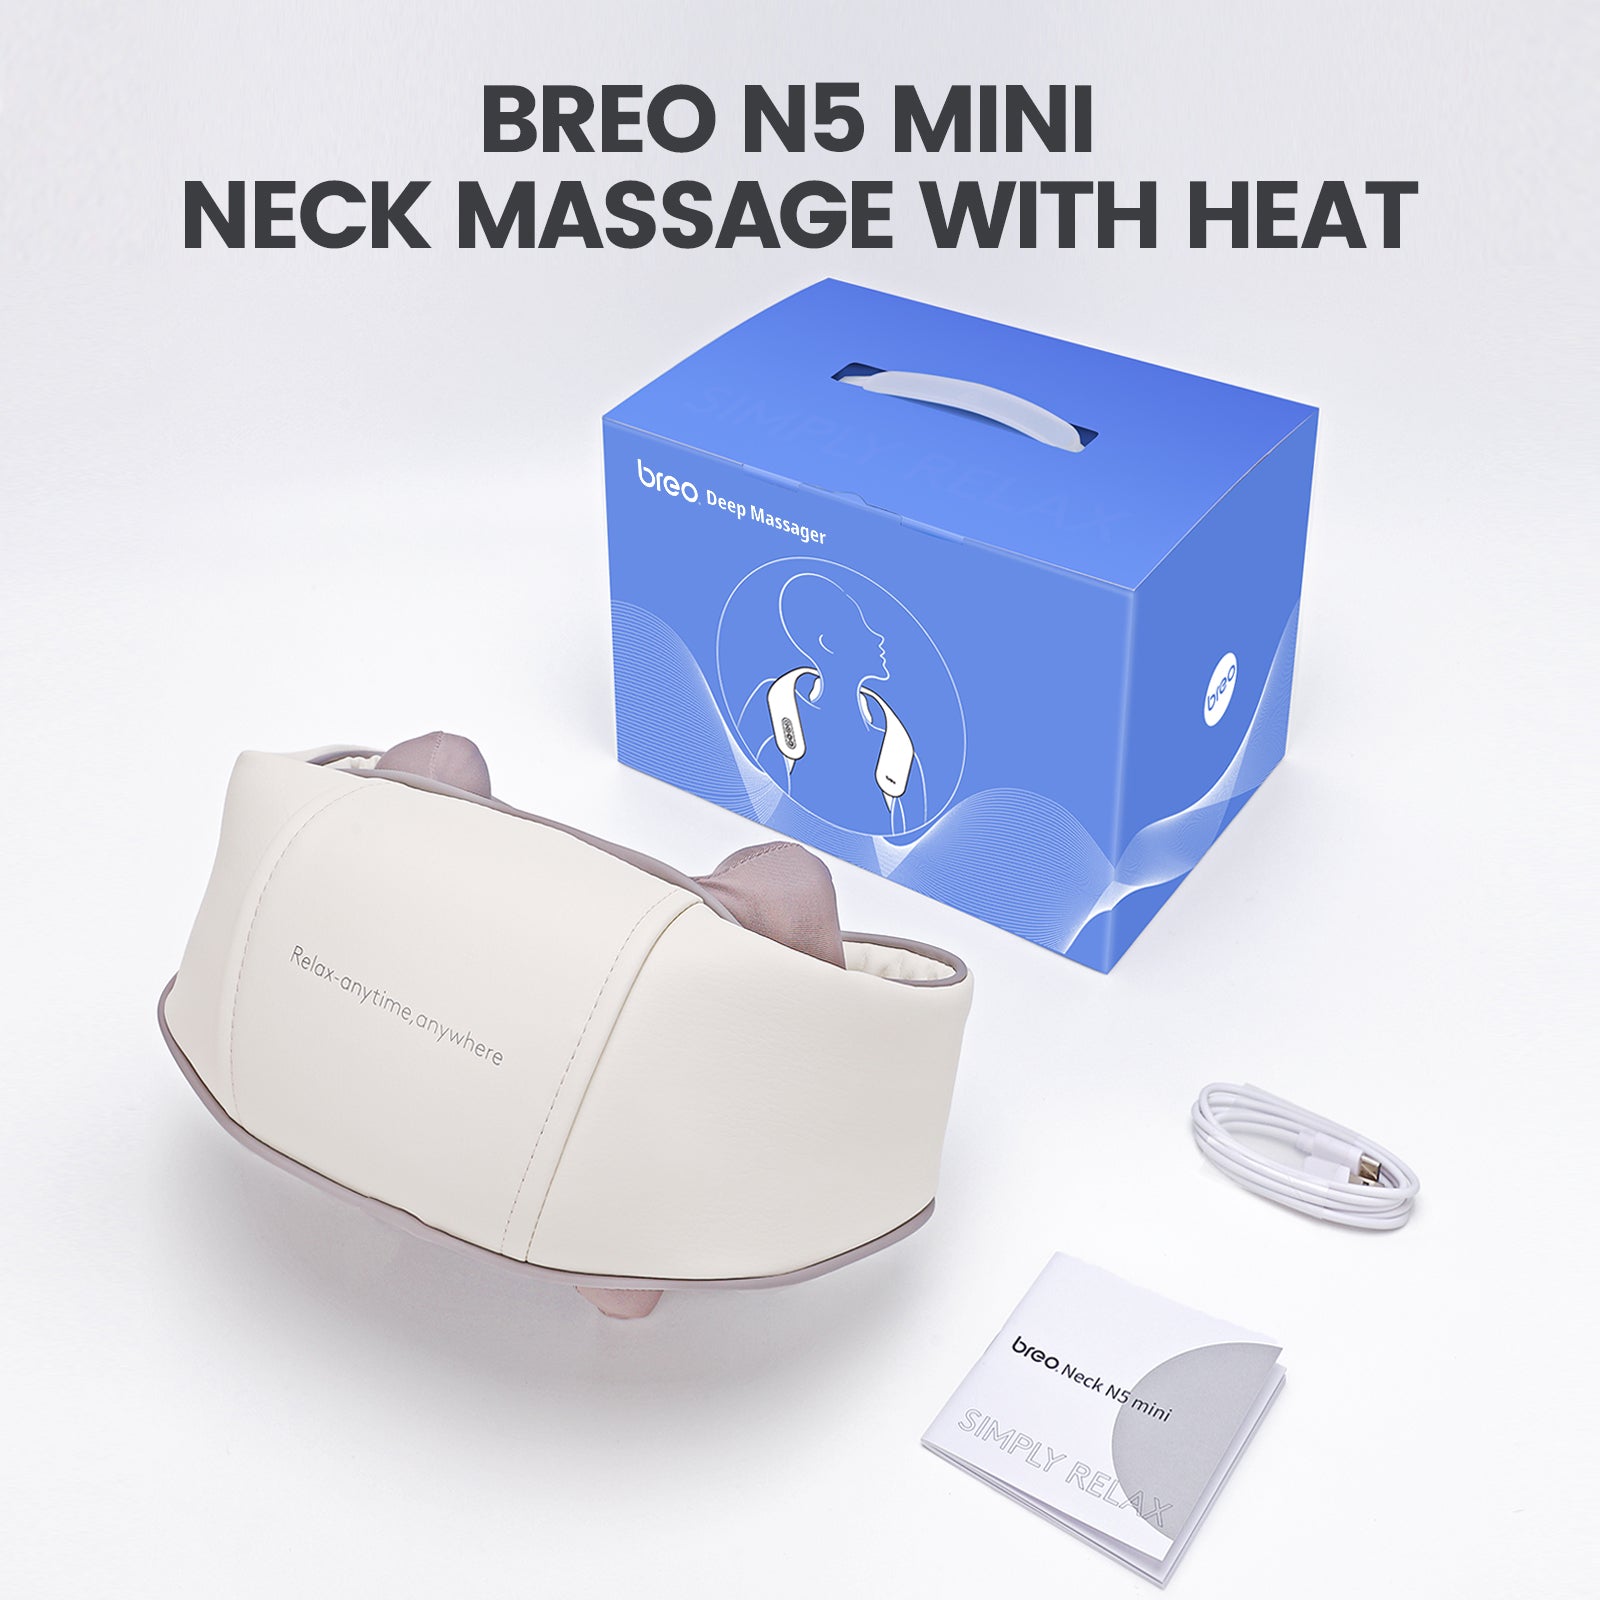 https://us.breo.com/cdn/shop/products/breo-n5-mini-deep-tissue-neck-massager-usbreocom-best-breo-massagers-939332.jpg?v=1704369642&width=1600